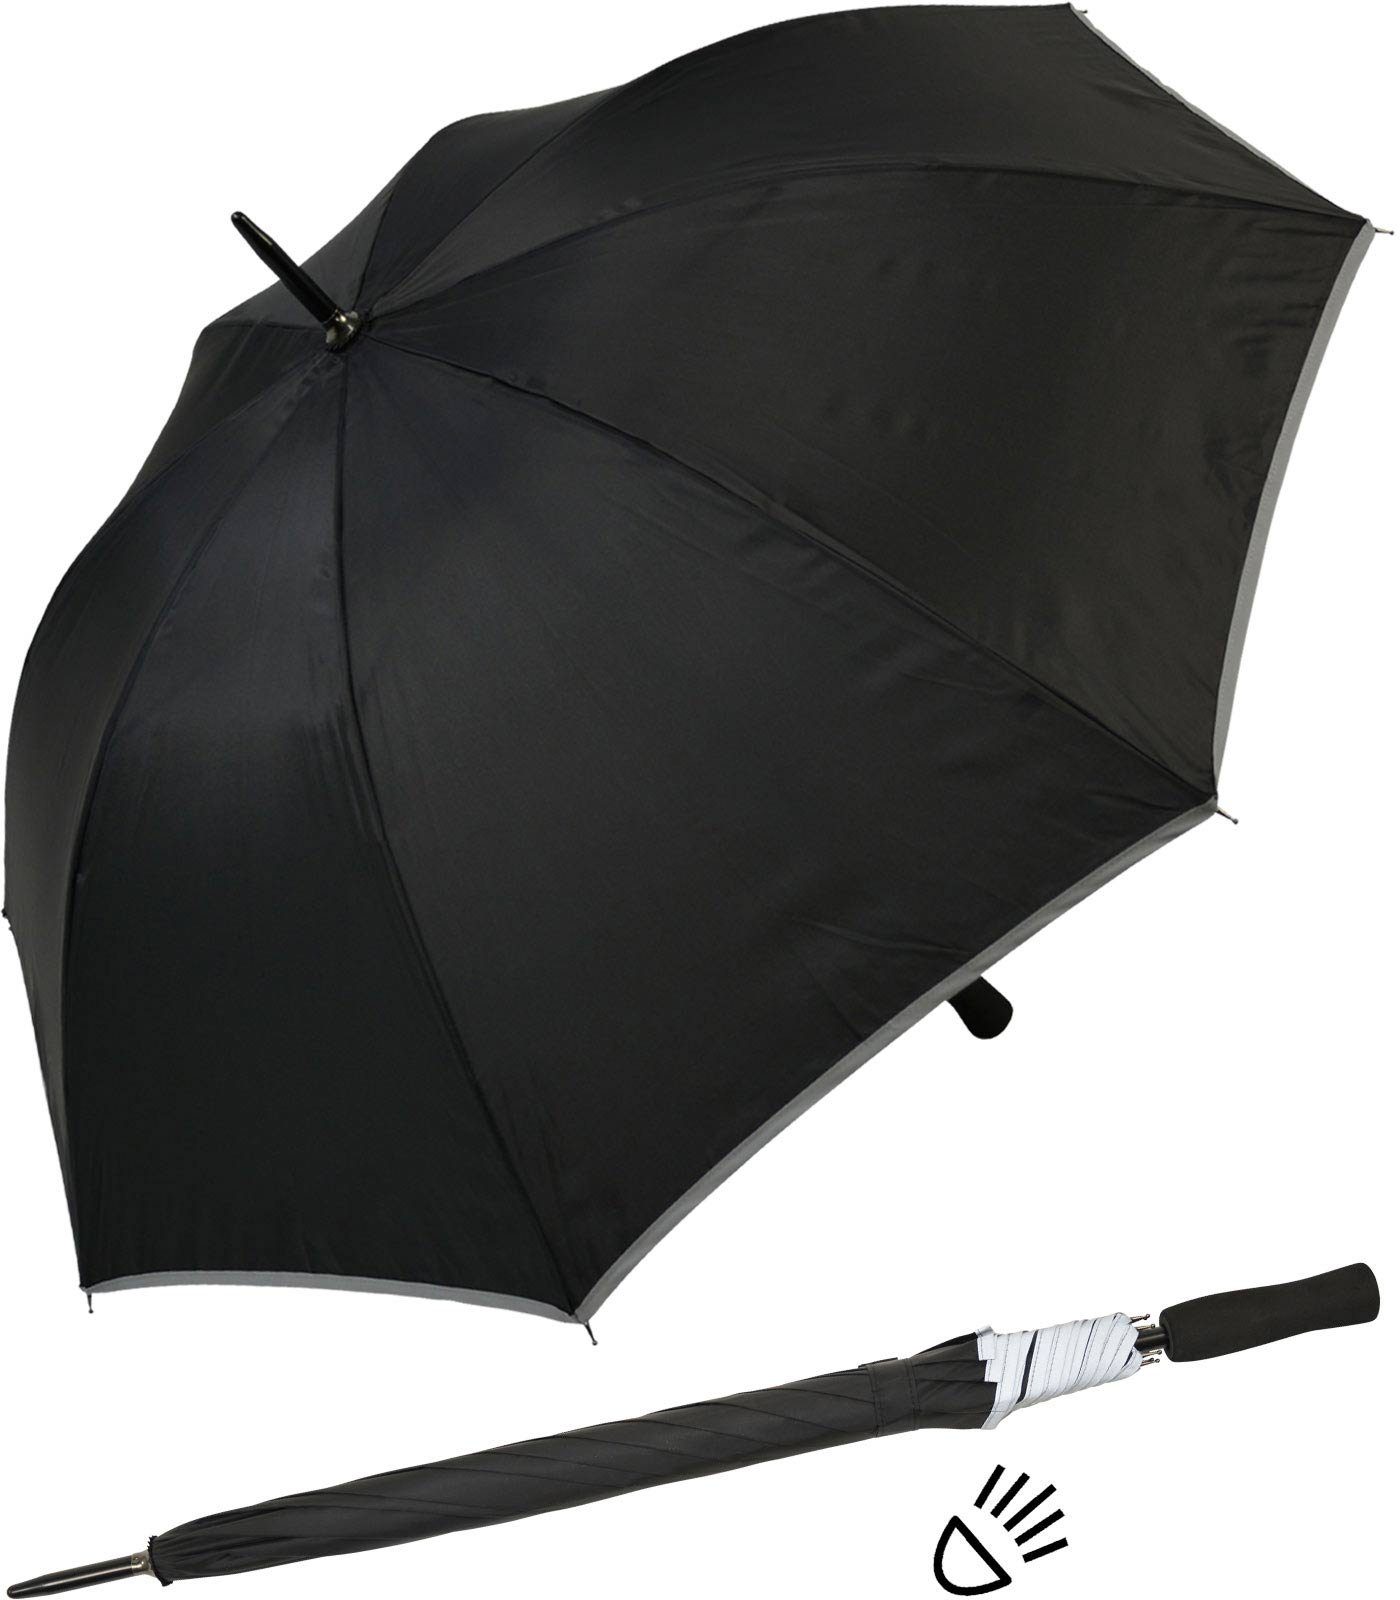 Stockregenschirm Falcone® leichter reflektierende reflex schwarz Impliva Fiberglas Borte, Reflex Sicherheitsschirm